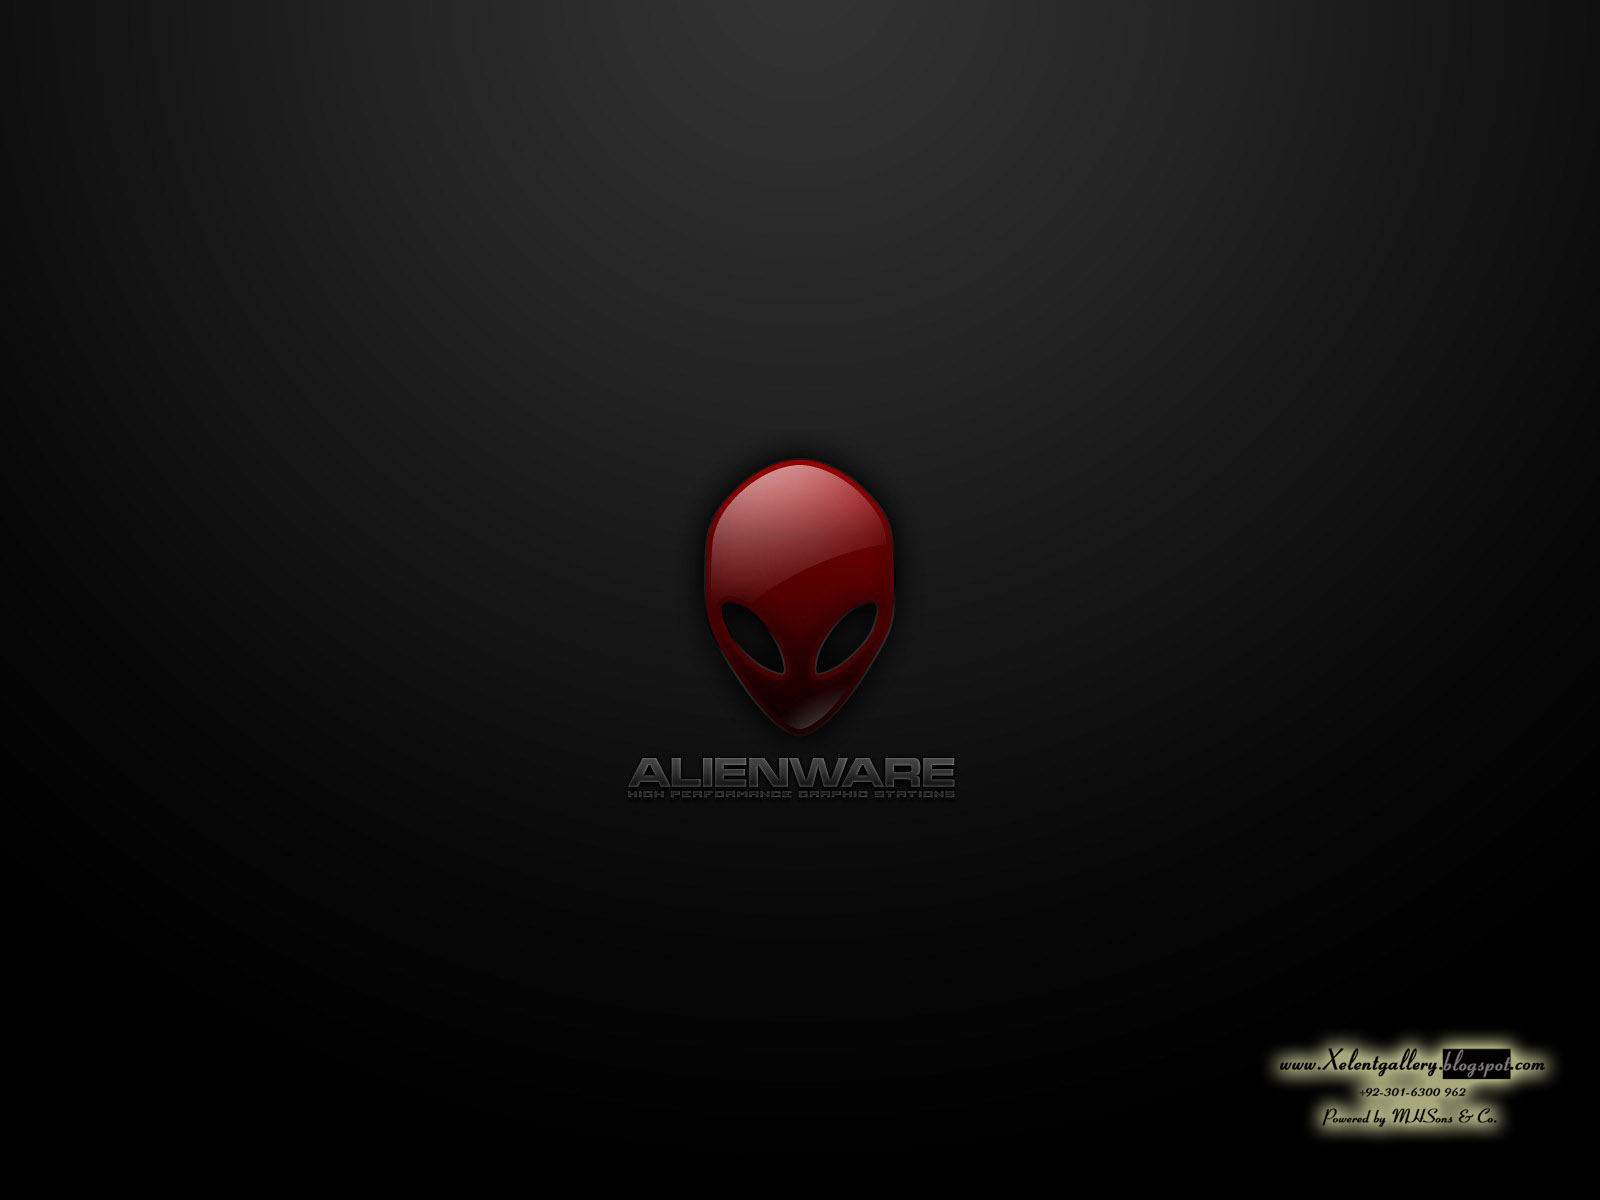 HD Alienware Wallpapers Pack 1600x1200 ~ Xelent Gallery